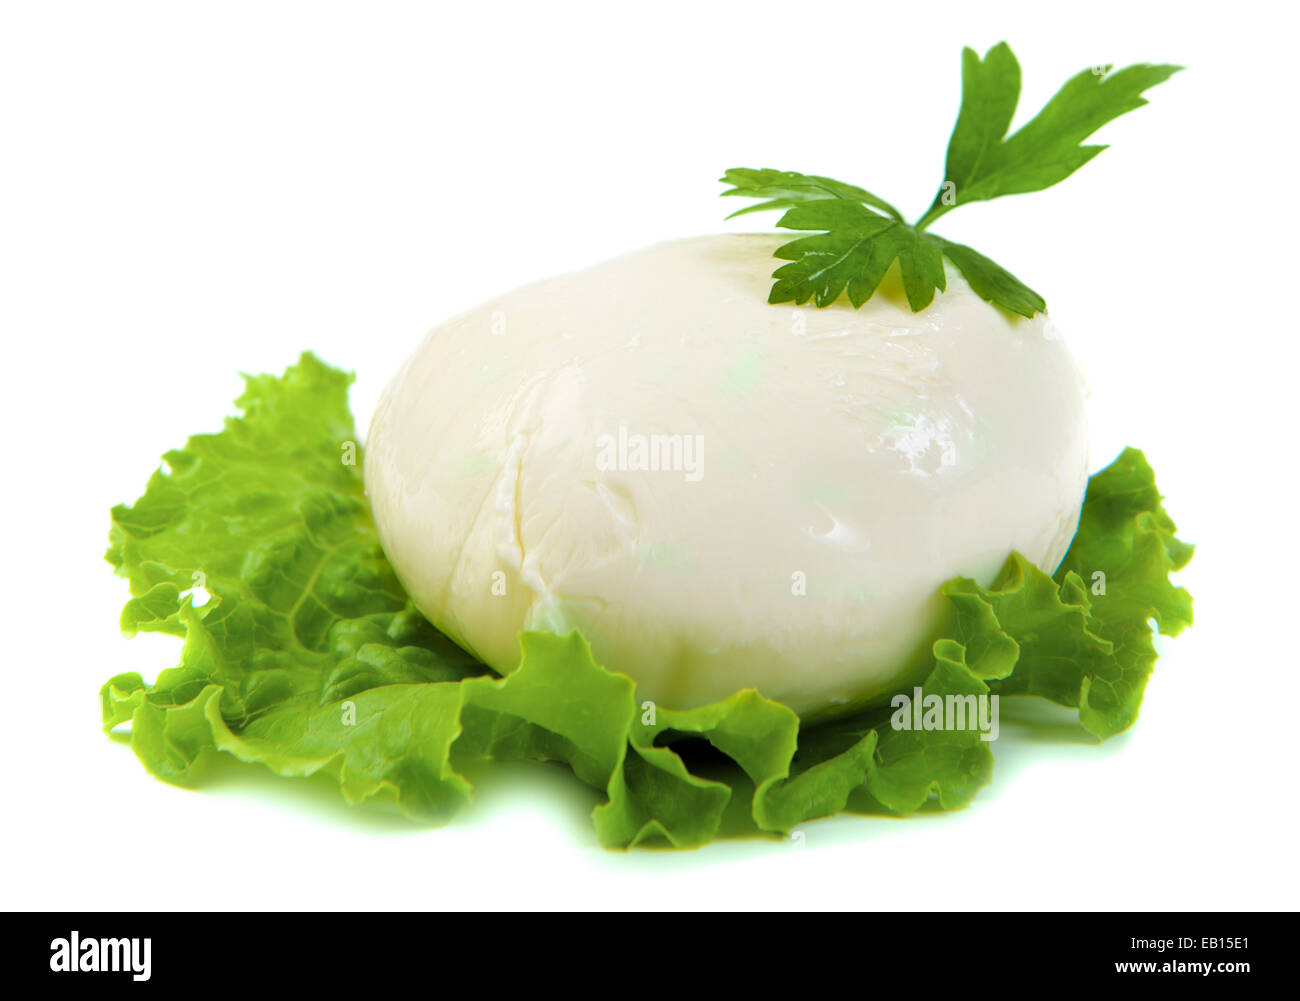 mozzarella cheese on green leaf Stock Photo